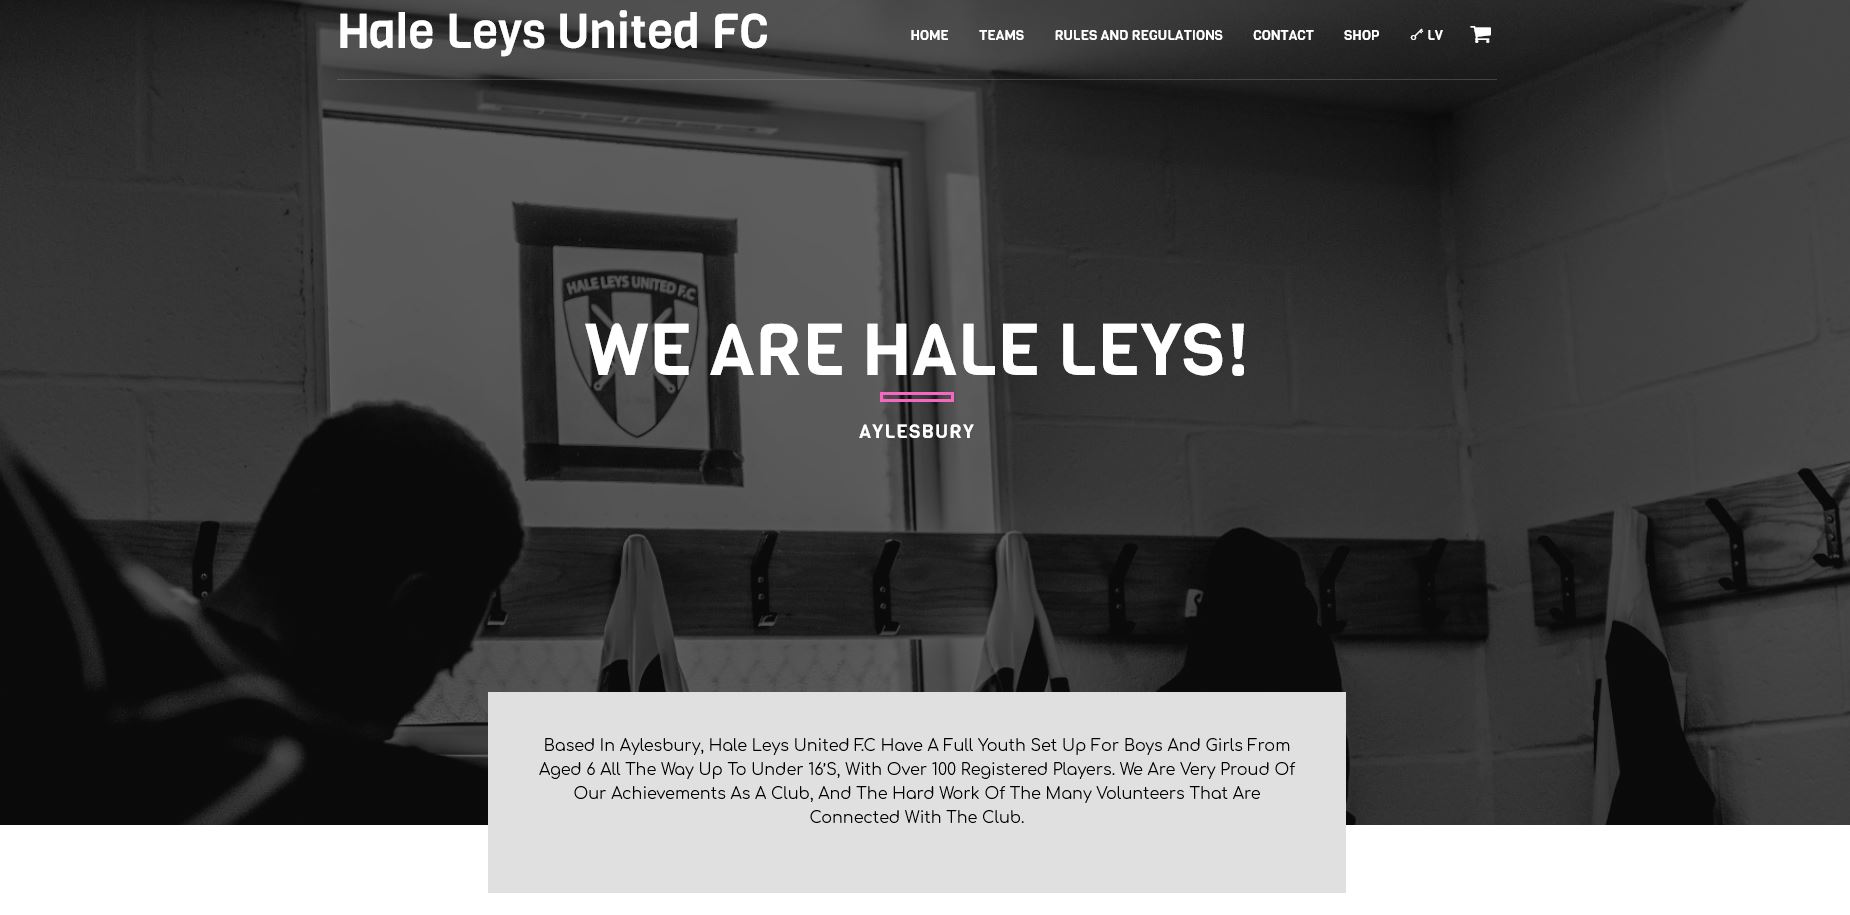 HALE LEYS UNITED FC